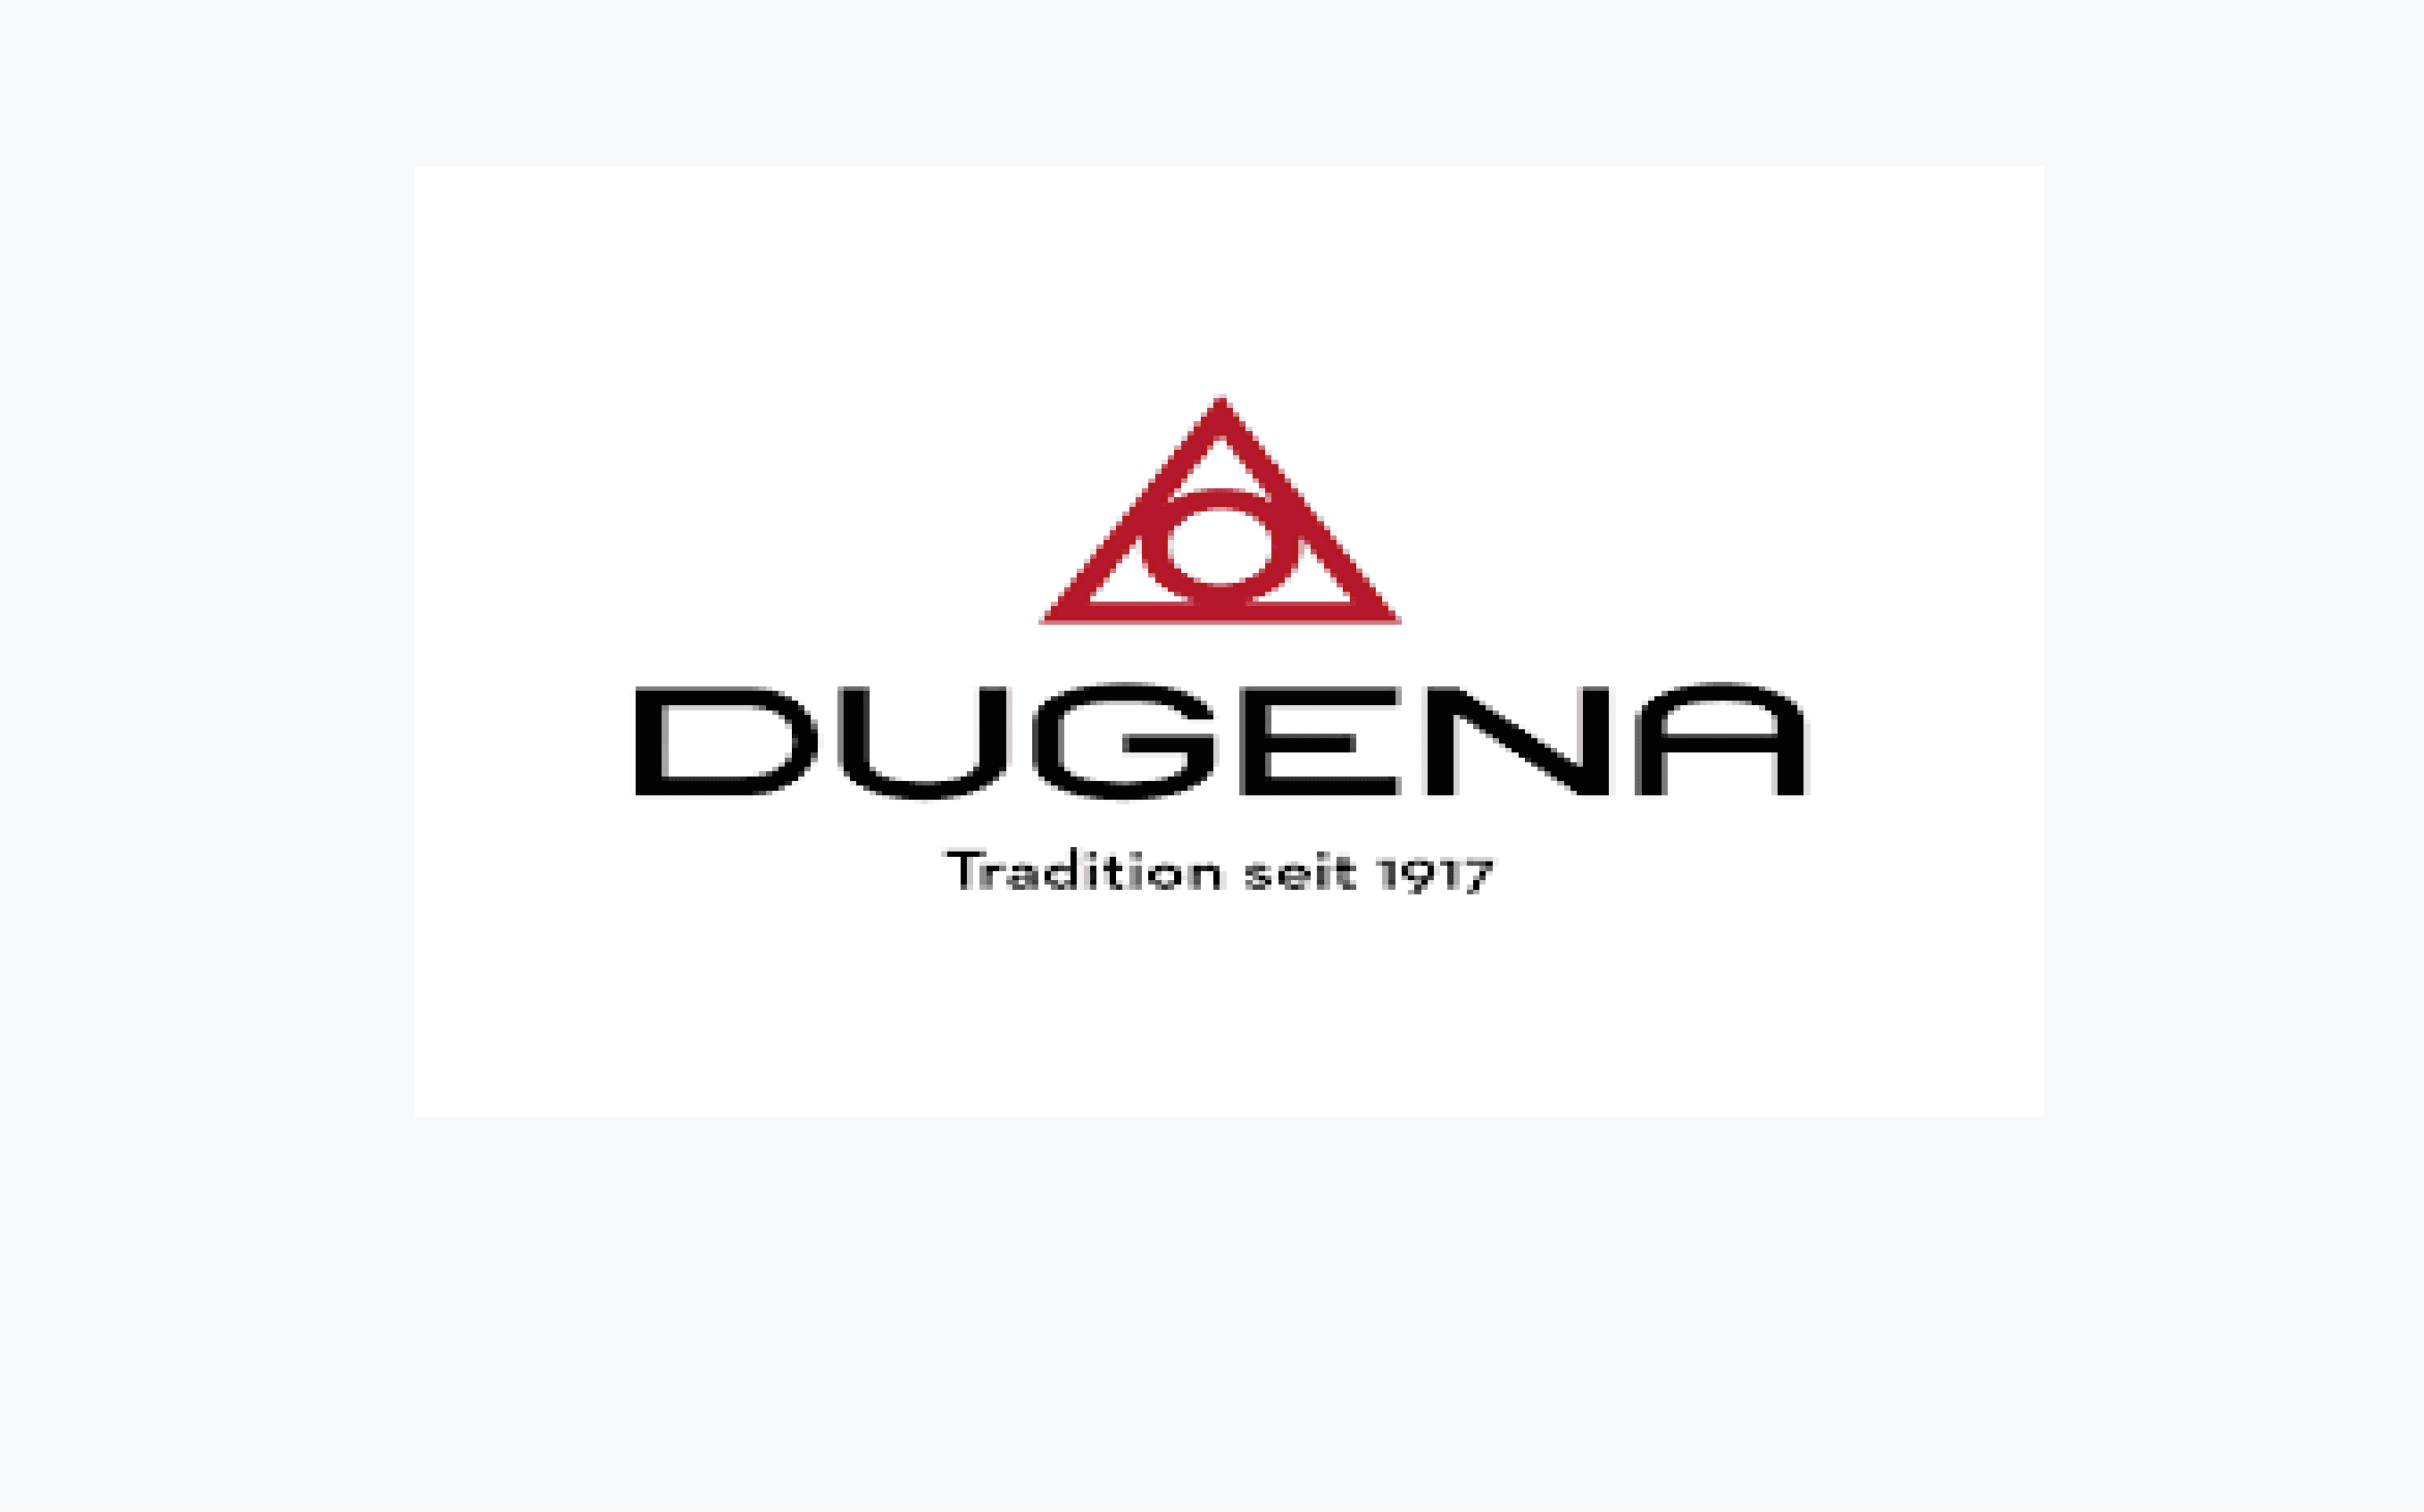 Dugena category